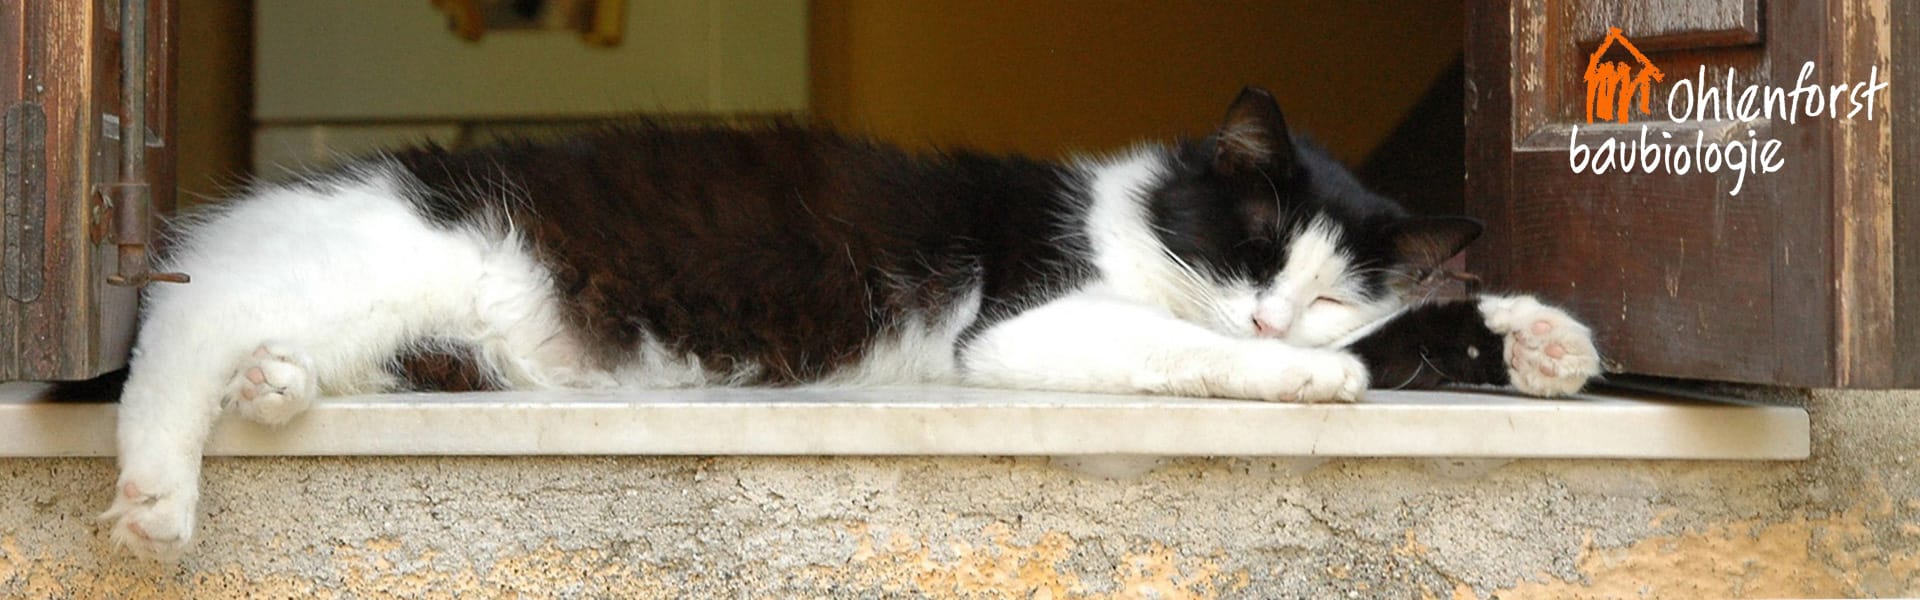 Schlafplatz der Katze auf einer Fensterbank